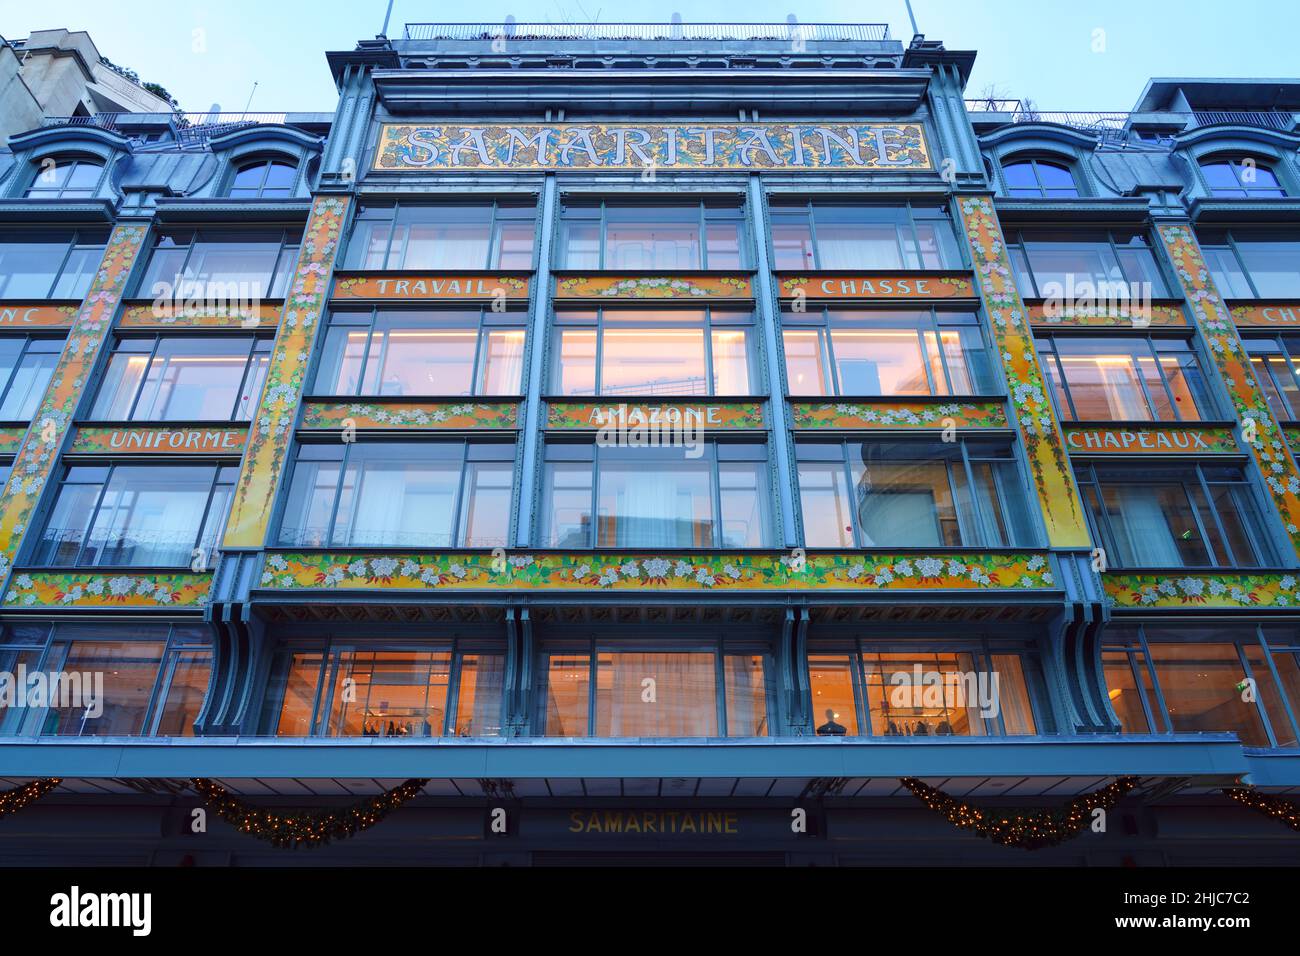 Louis Vuitton headquarter building (ex Samaritaine)